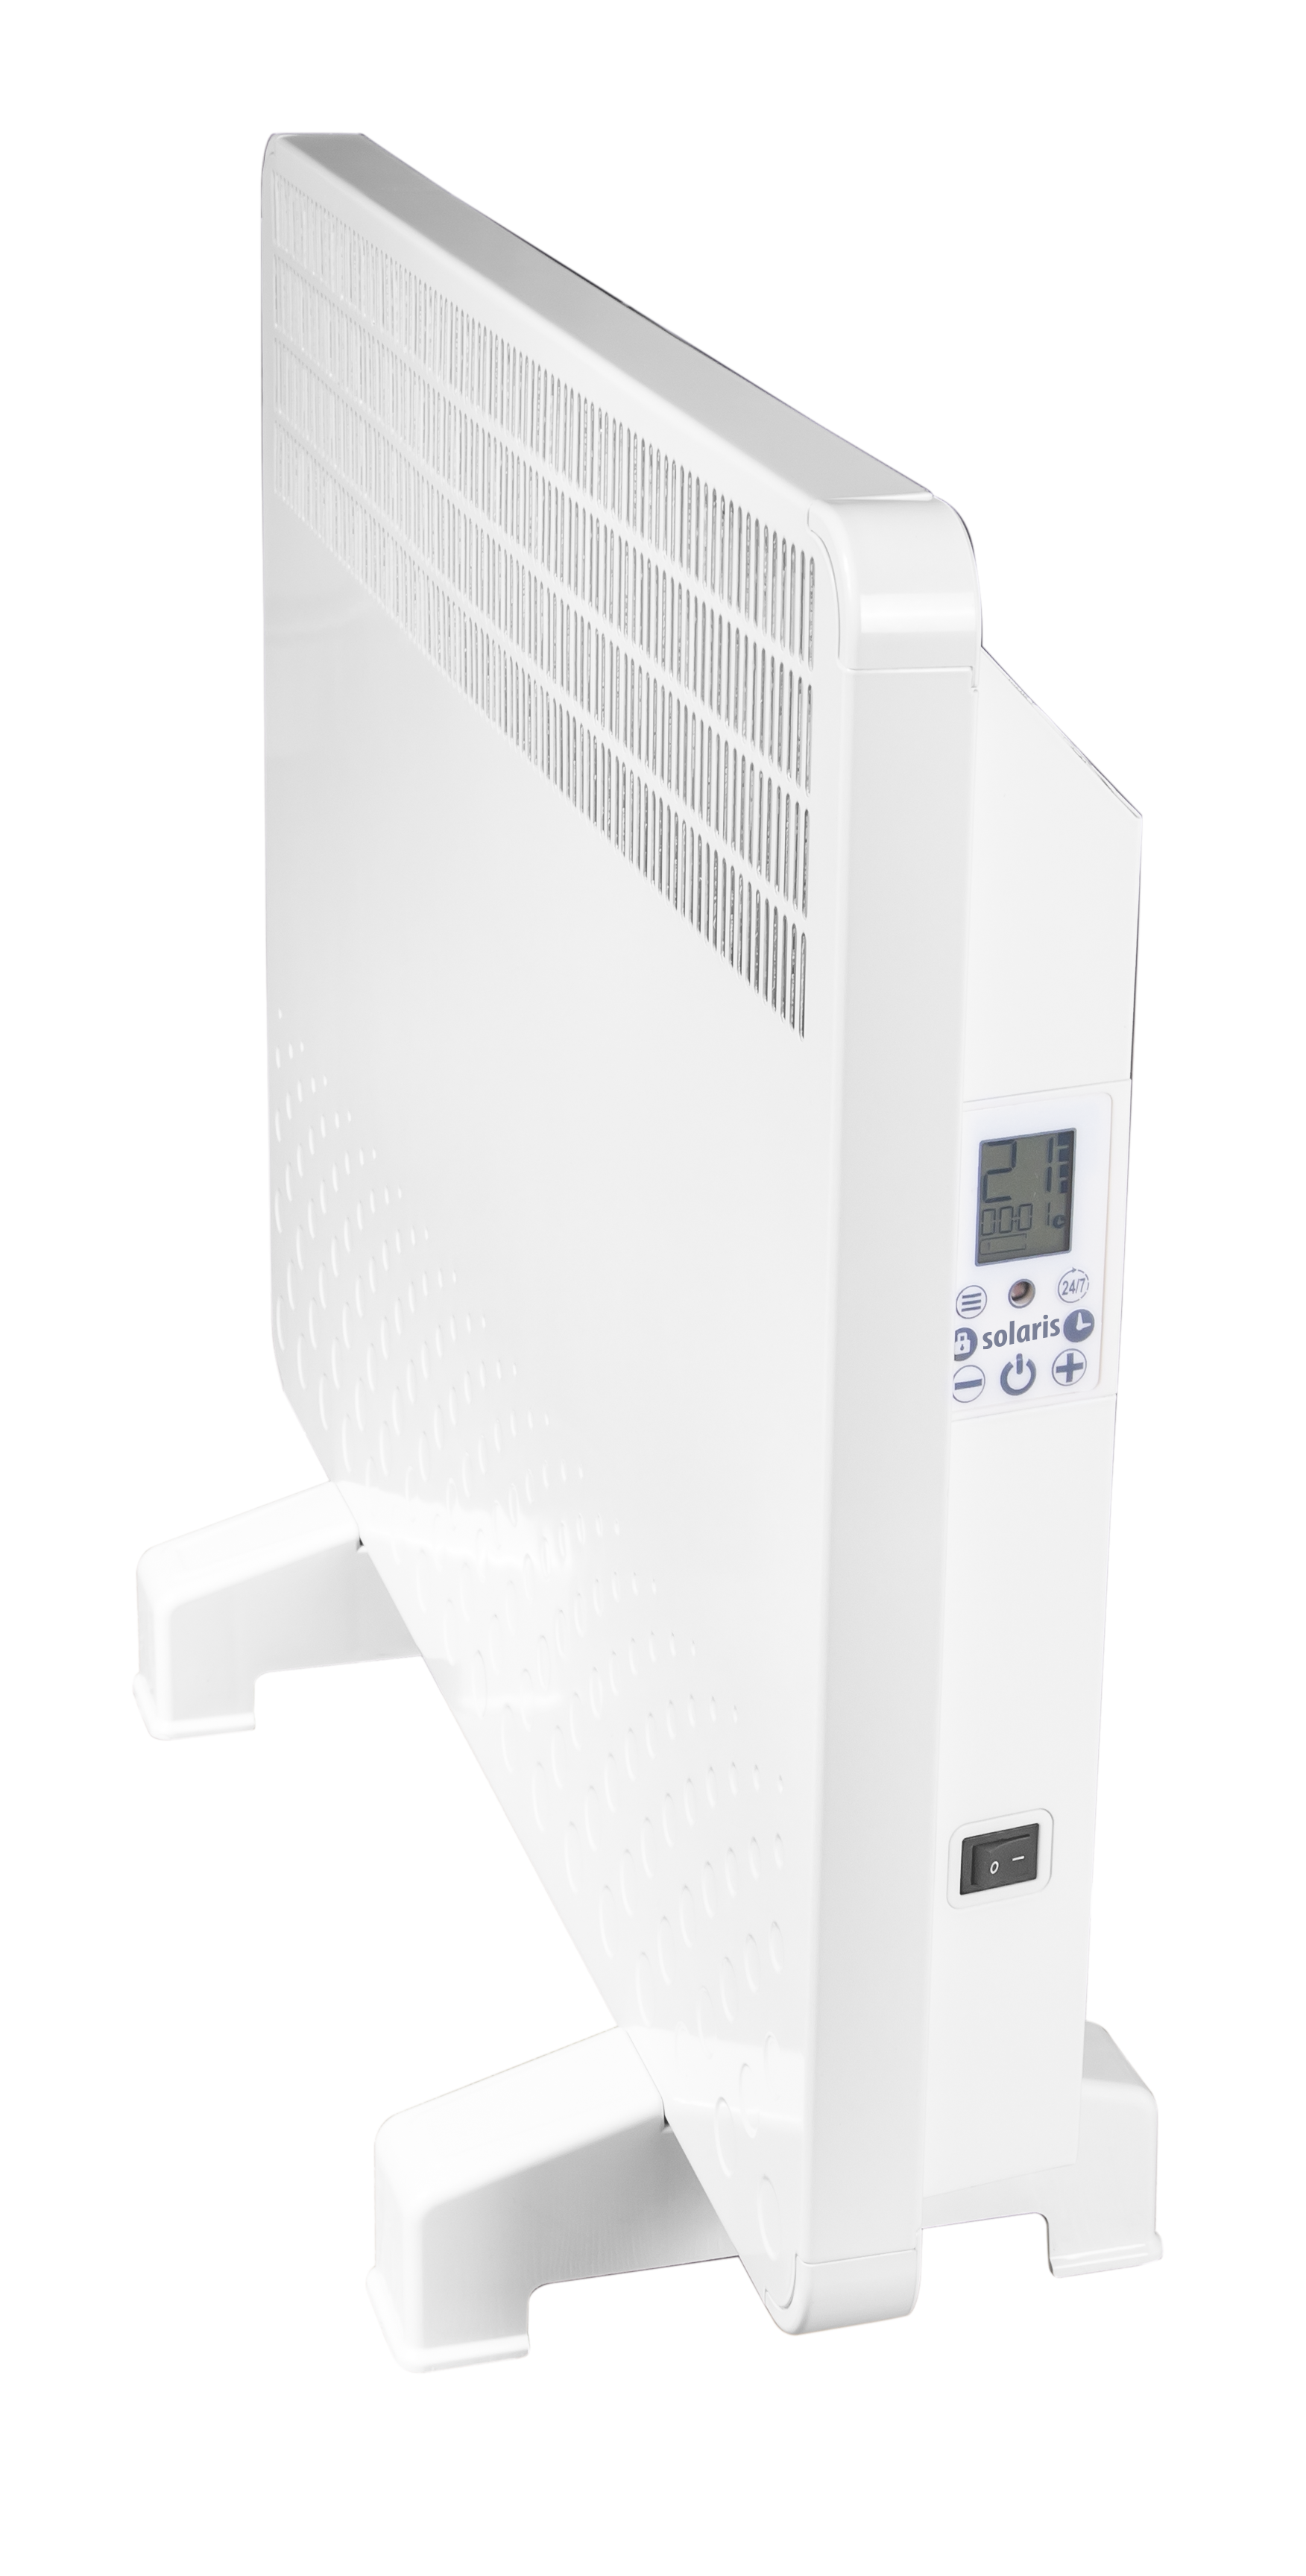 Convector electric de perete sau pardoseala Solaris KIP 1000 W, control electronic, Termostat de siguranta, termostat reglabil, IP 24, ERP 2018, pana la 12 mp